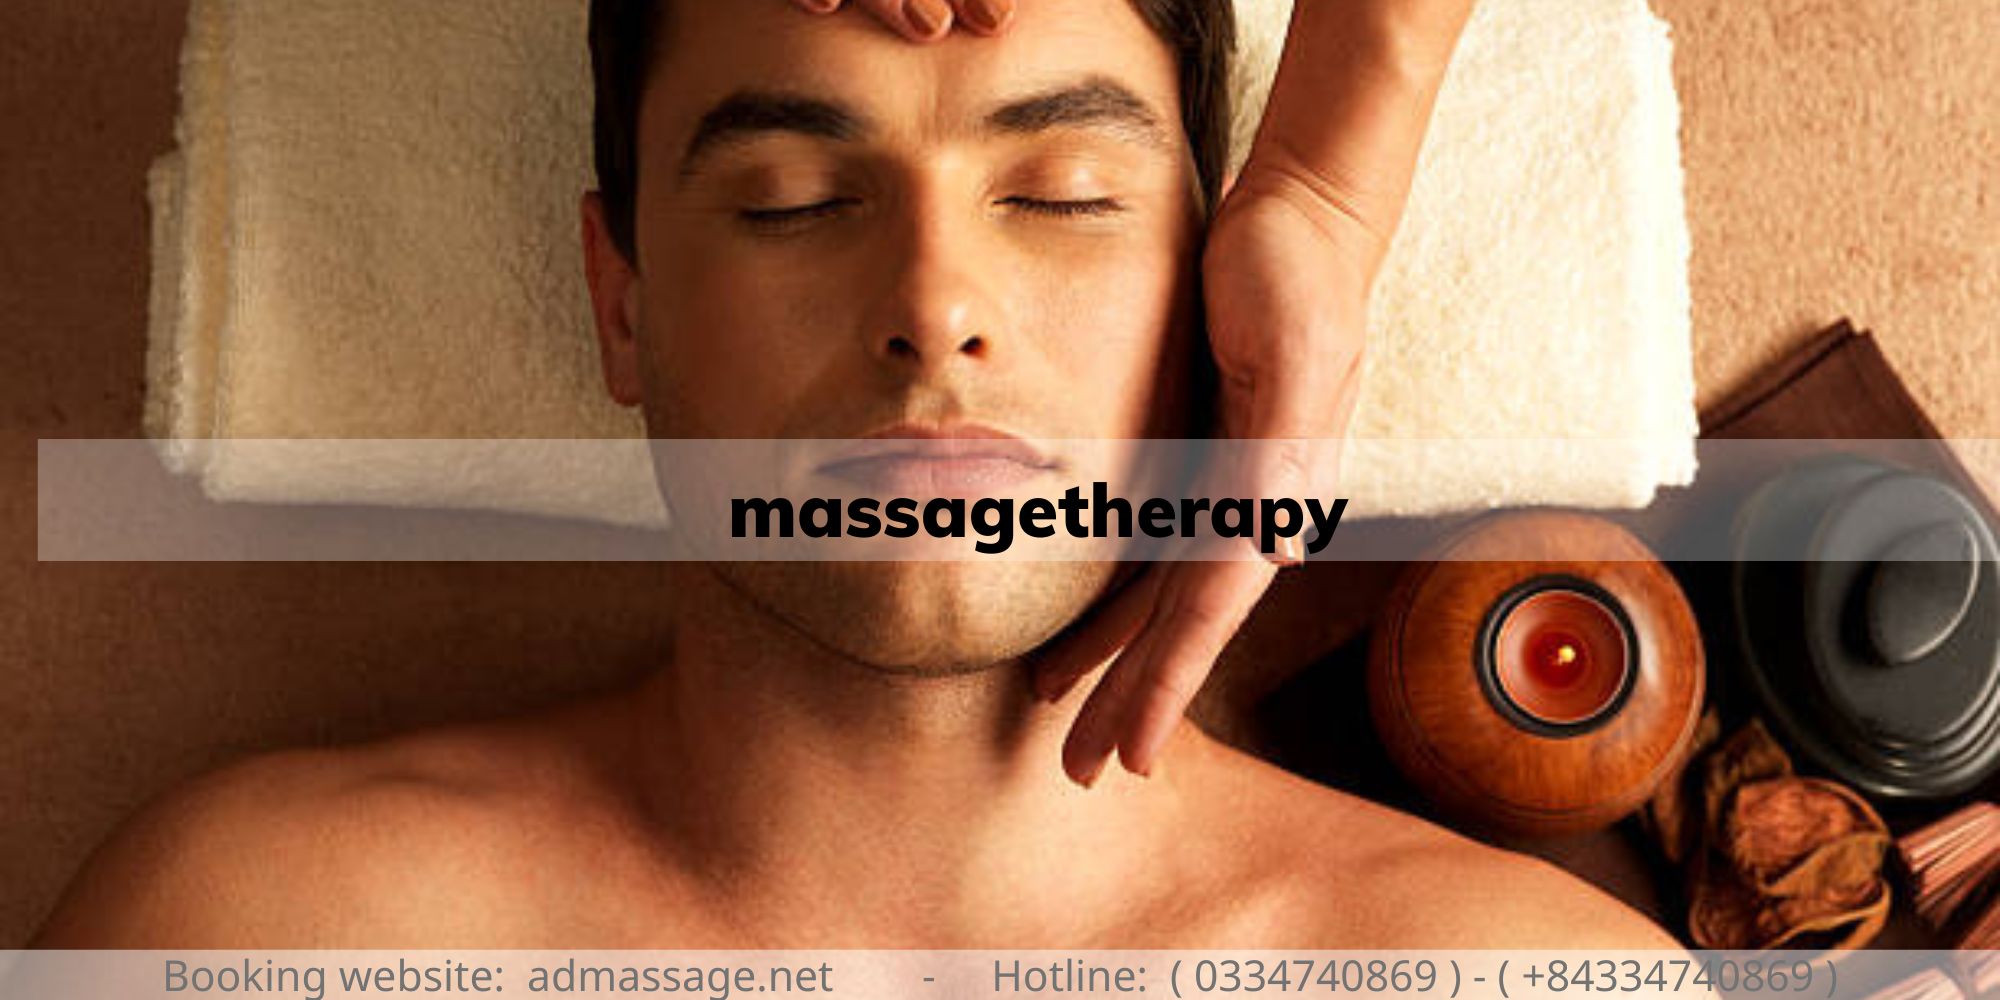 massagetherapy